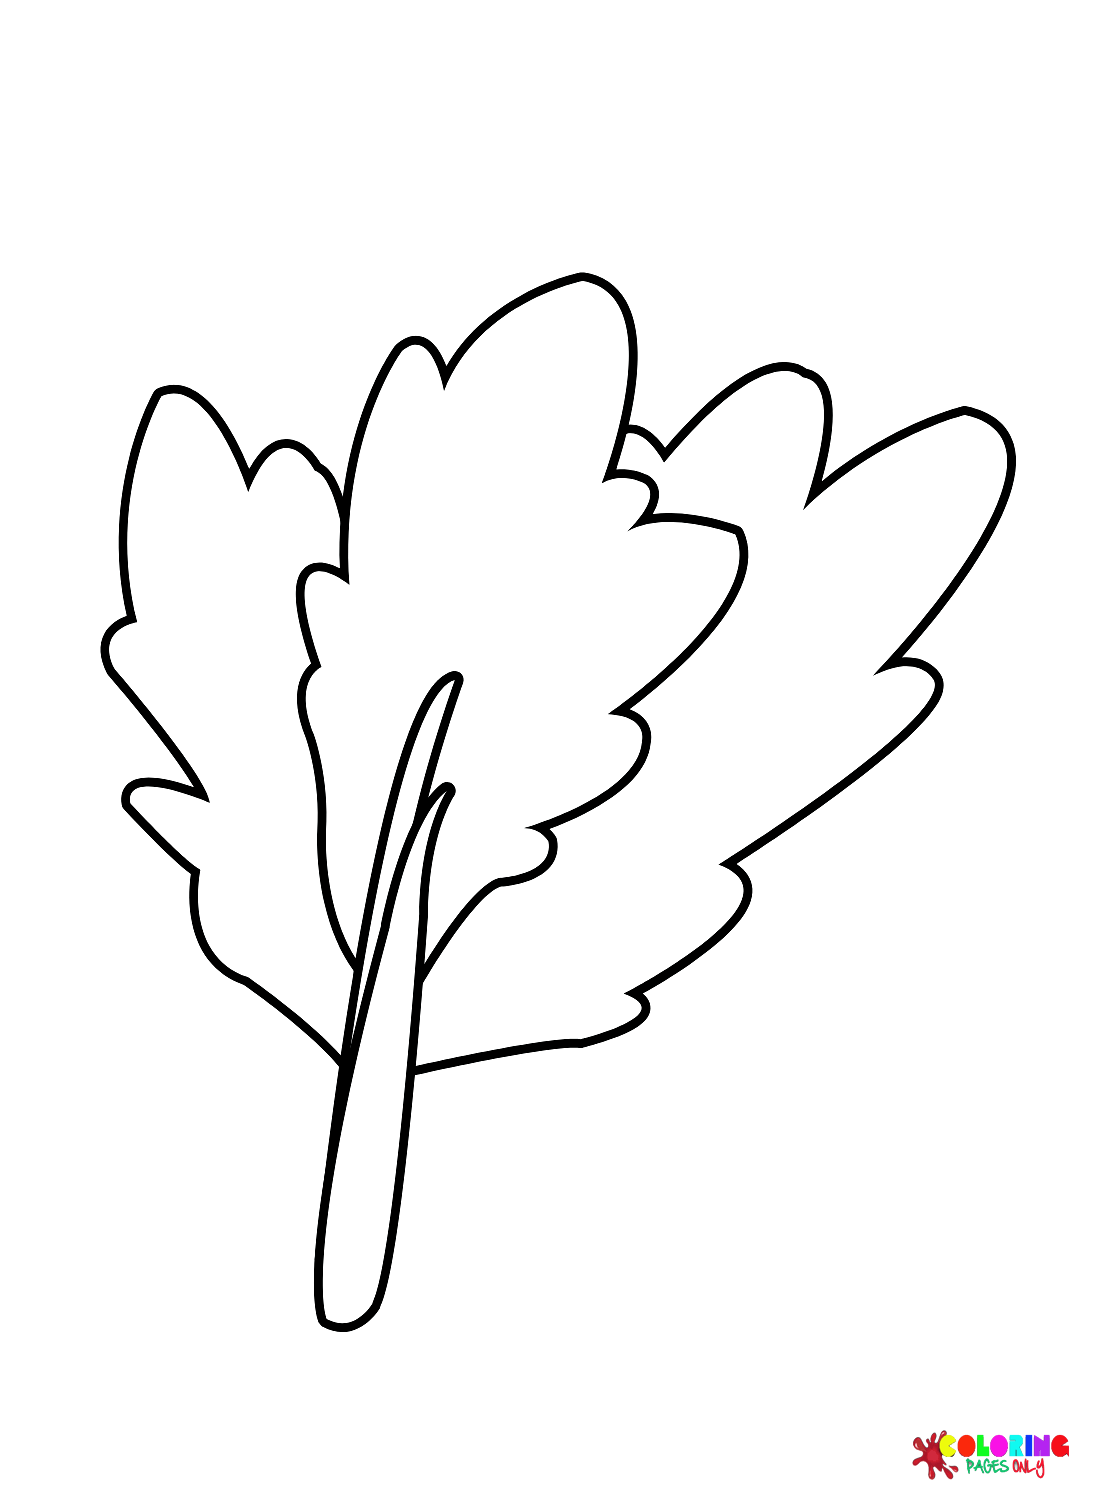 Листья сельдерея из сельдерея